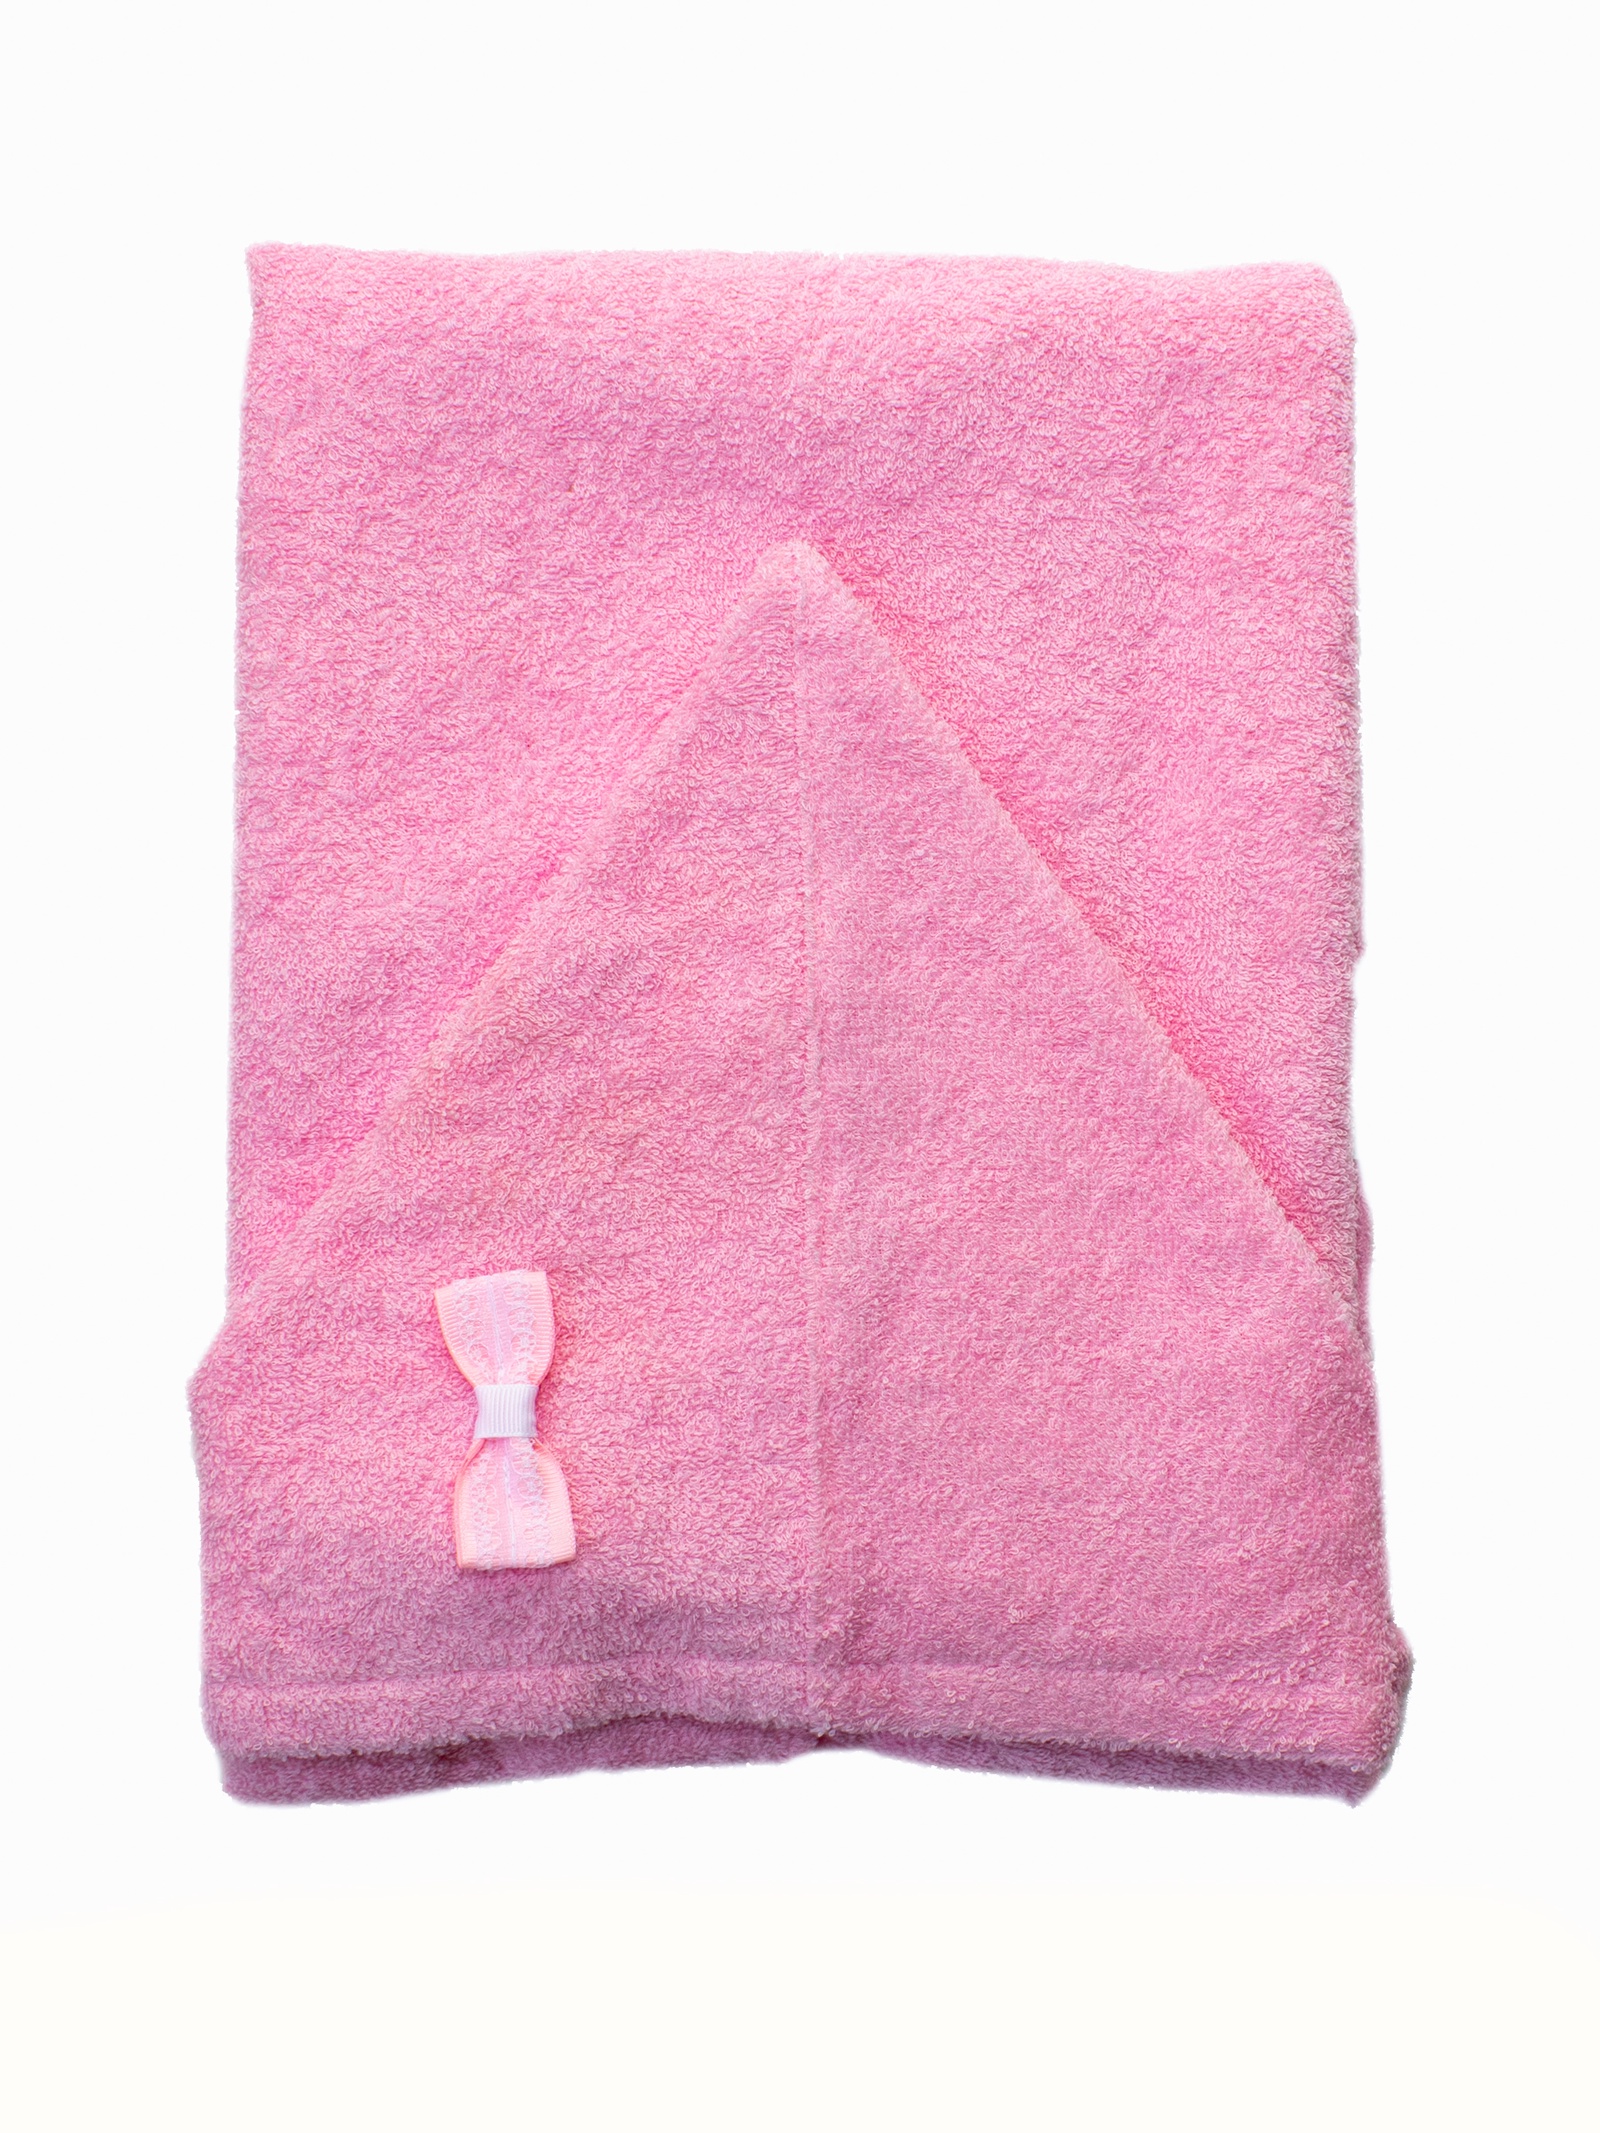 Розовое полотенце. Вискозные полотенца для новорожденных. Розовое полотенце Baby. H&M детская розовое  полотенце. Полотенца basic